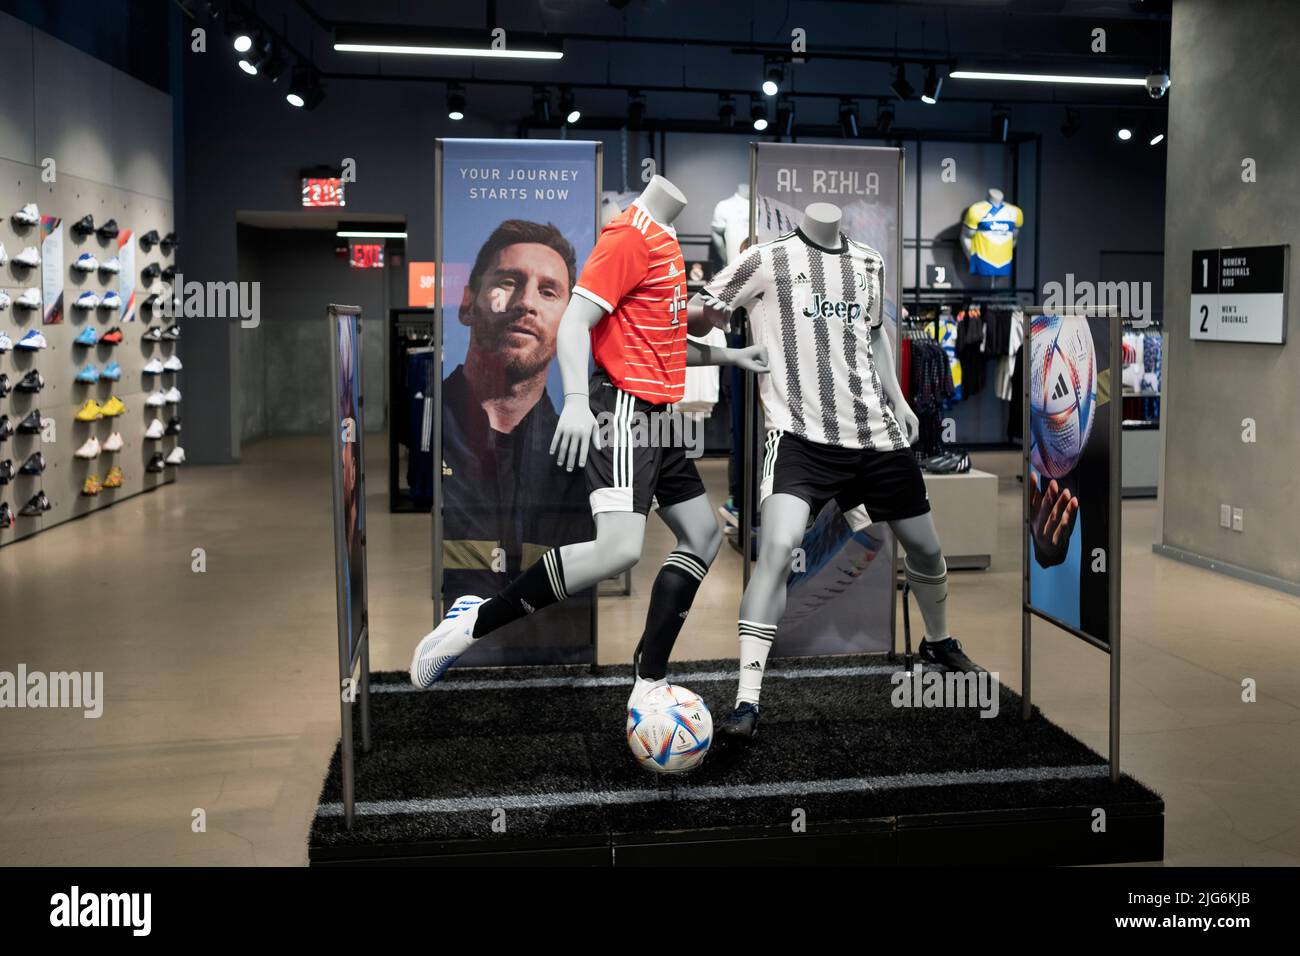 La section football du magasin Adidas de Broadway à Manhattan, avec un maillot Juventus et une photo du grand Lionel Messi. Sur Broadway à New York. Banque D'Images